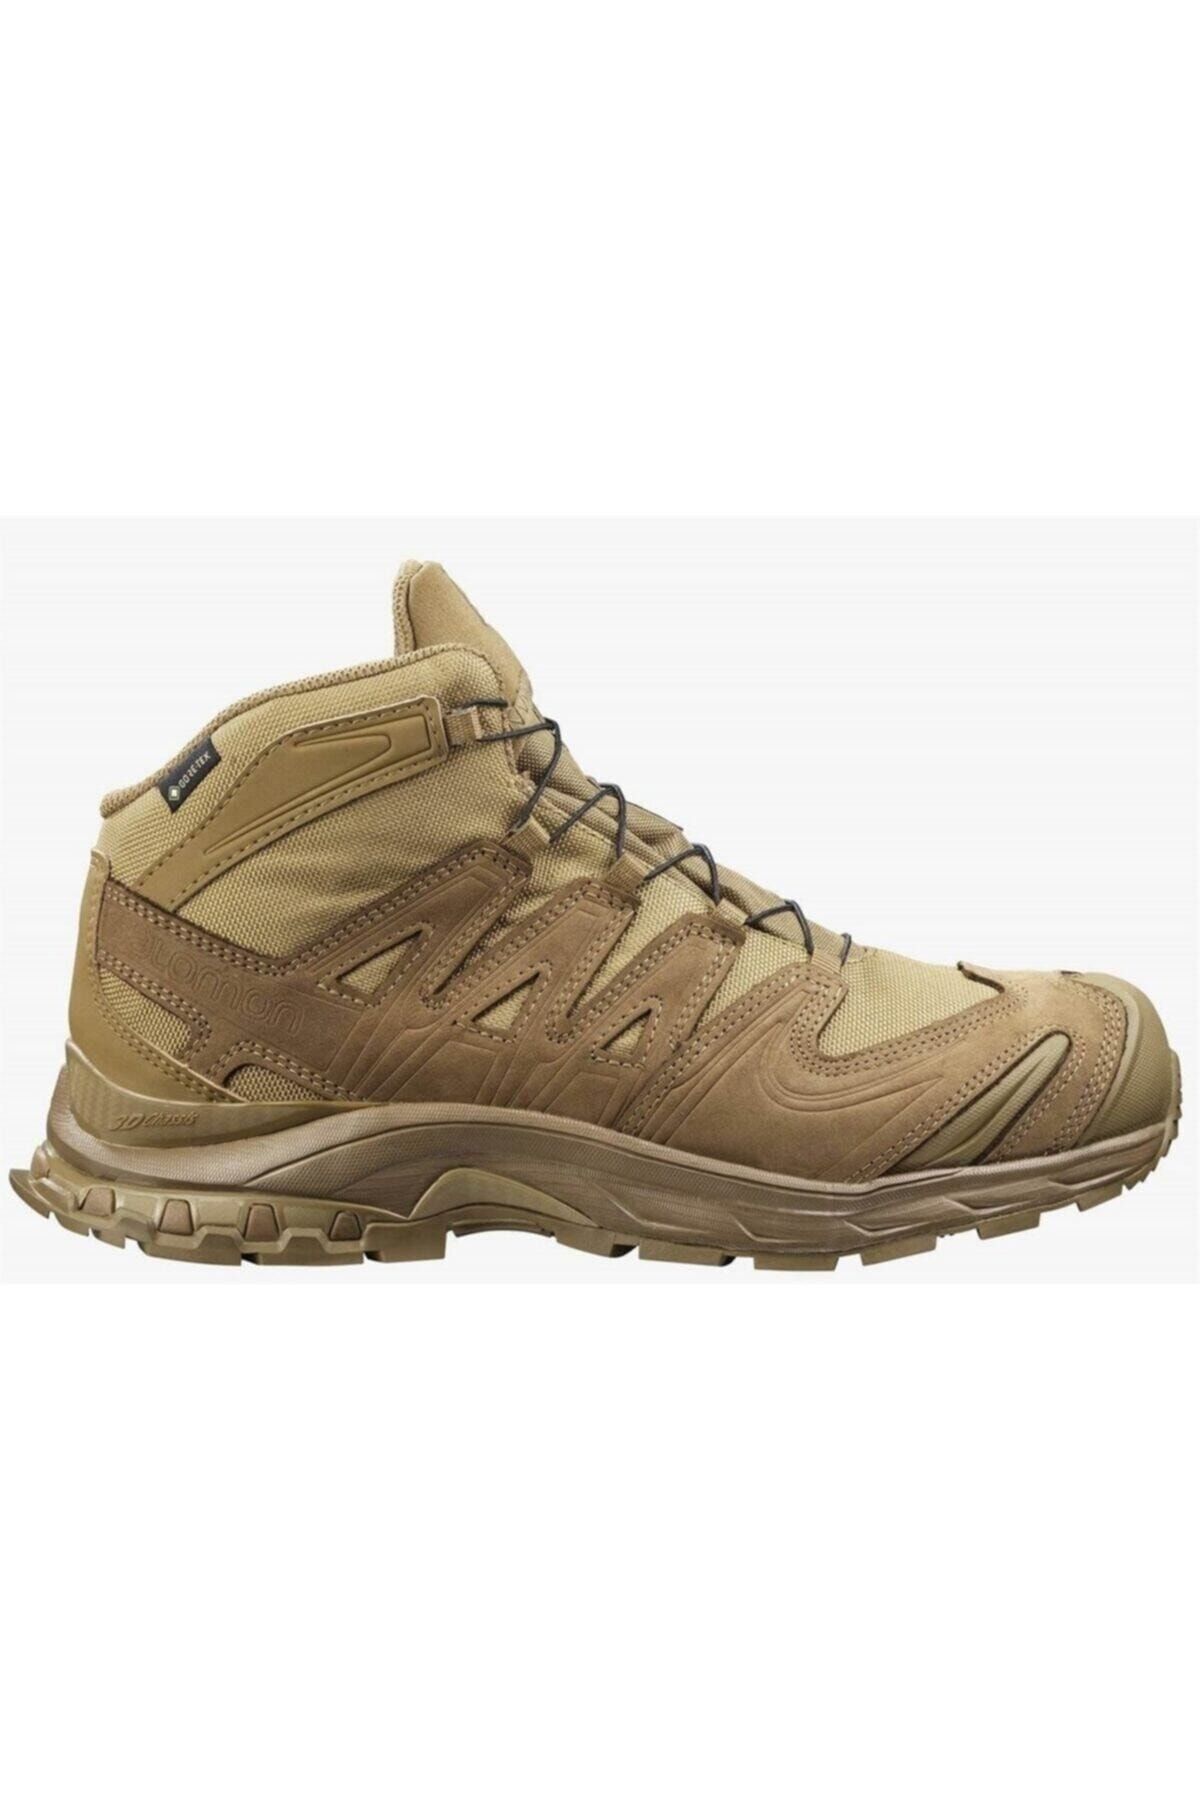 Salomon Shoes Xa Forces Mid Gtx Erkek Sarı Outdoor Ayakkabı L40977900